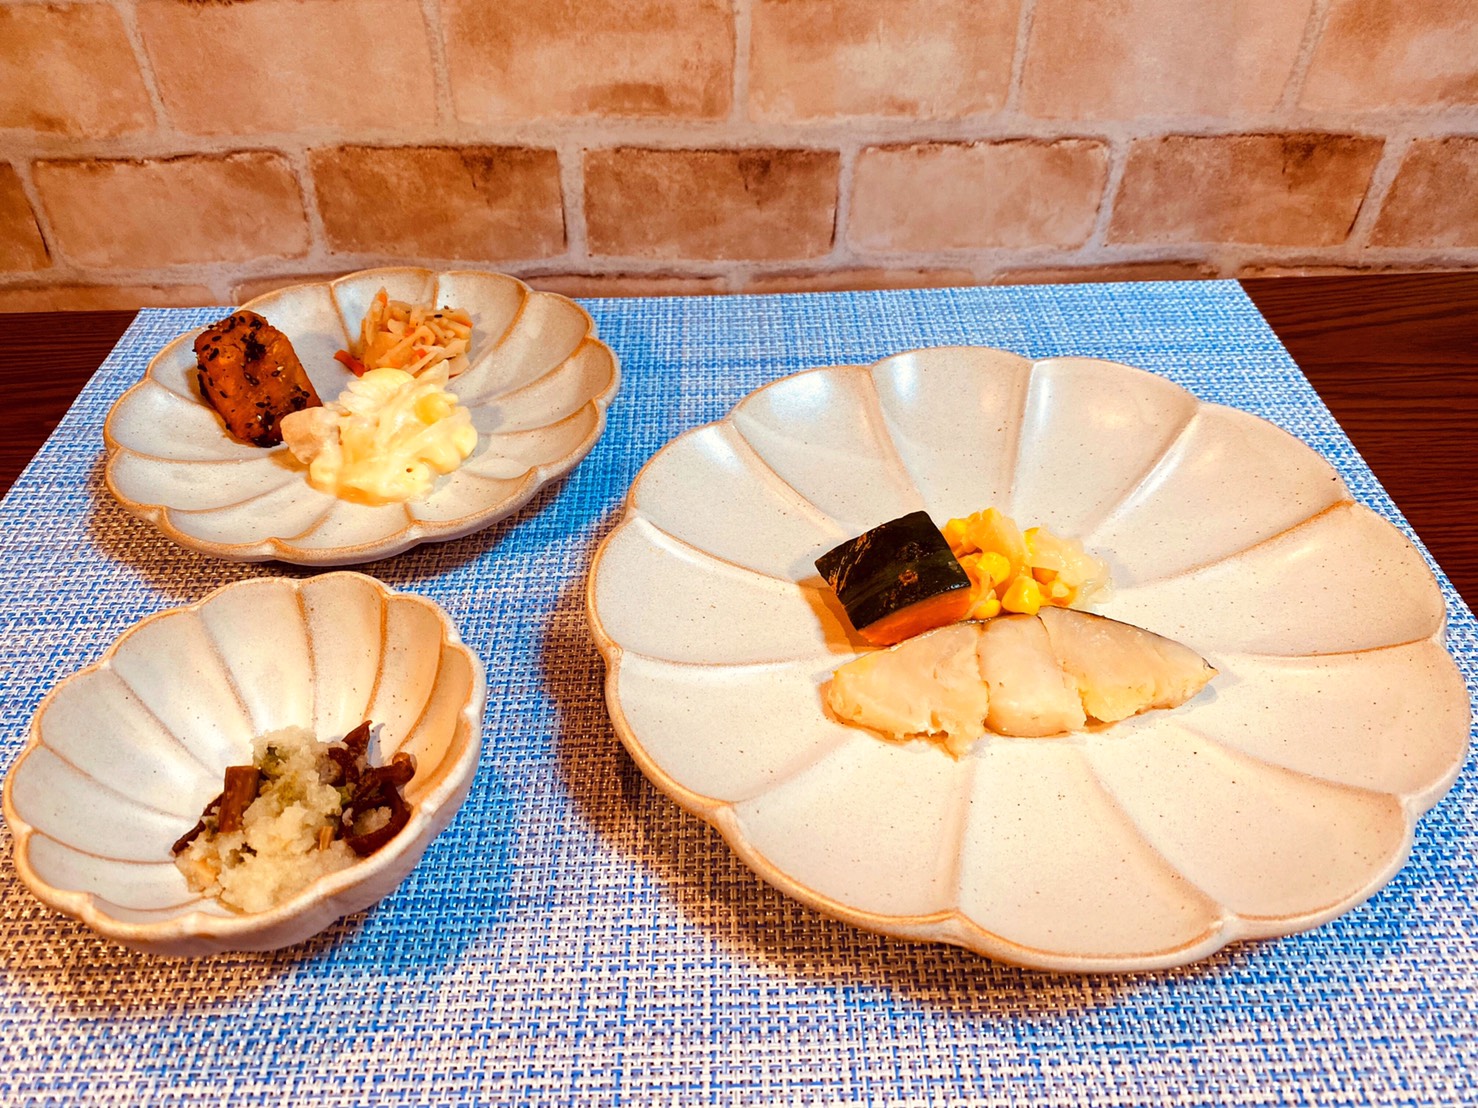 (メニューの一例)メルルーサの梅風味焼、鶏肉と玉ねぎの煮物、大学芋、山菜の和え物(わらび、ぜんまい)